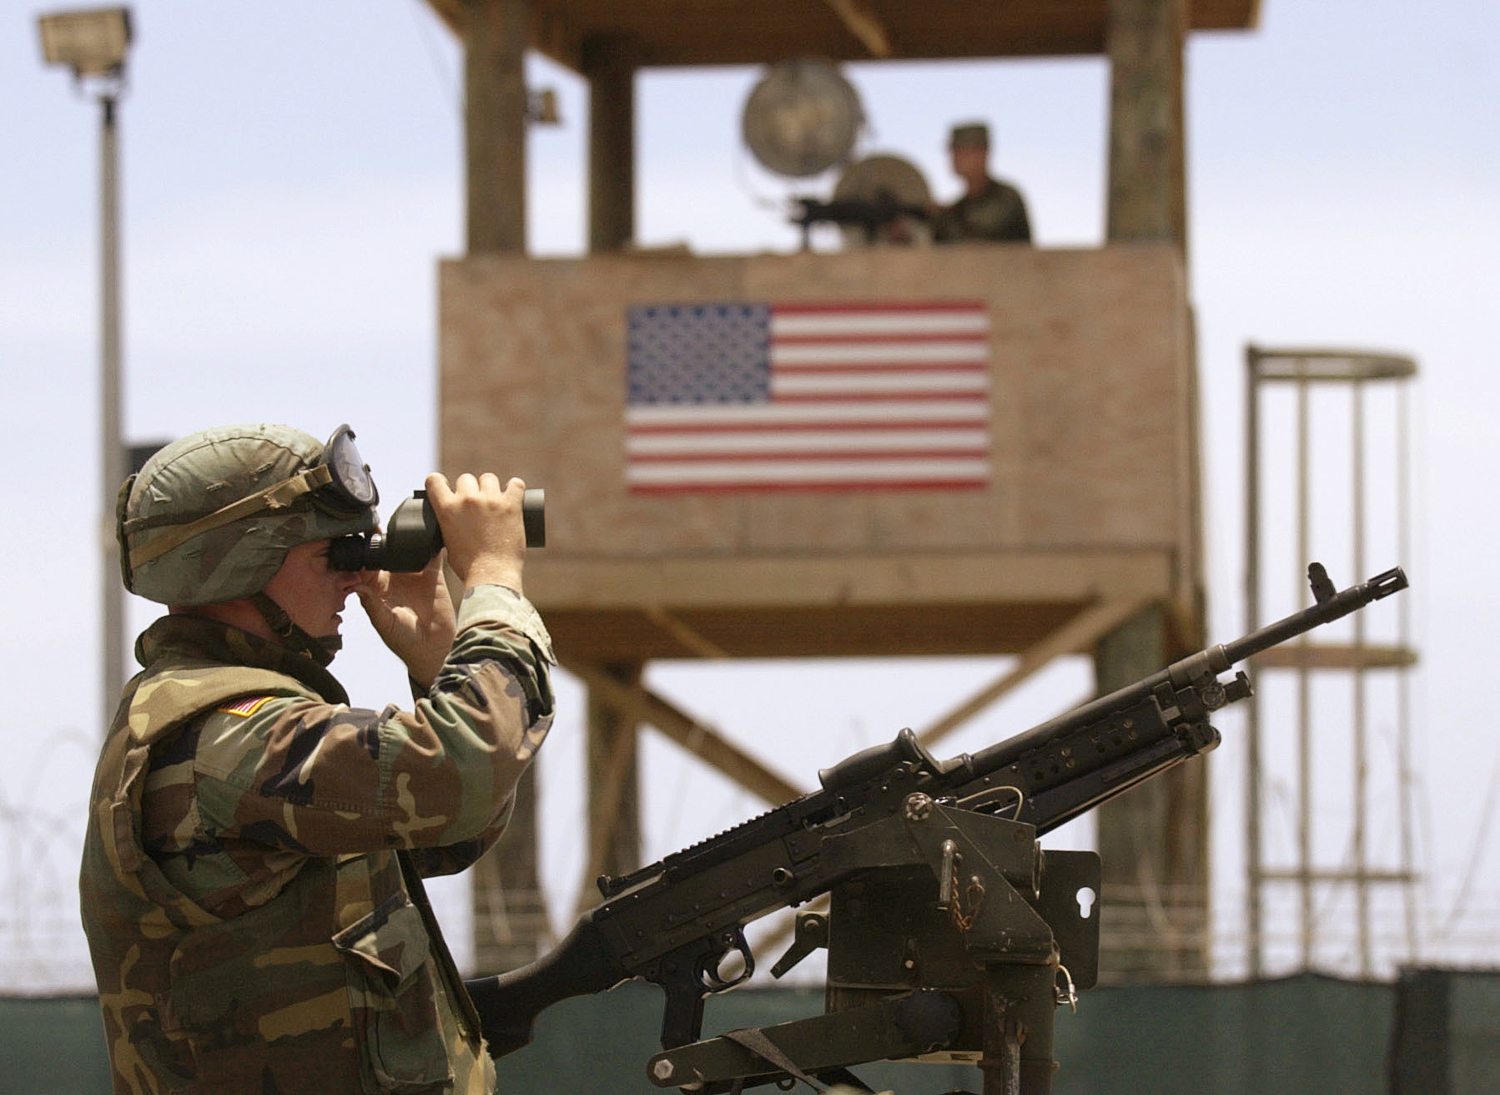 US soldier at Guantanamo Bay